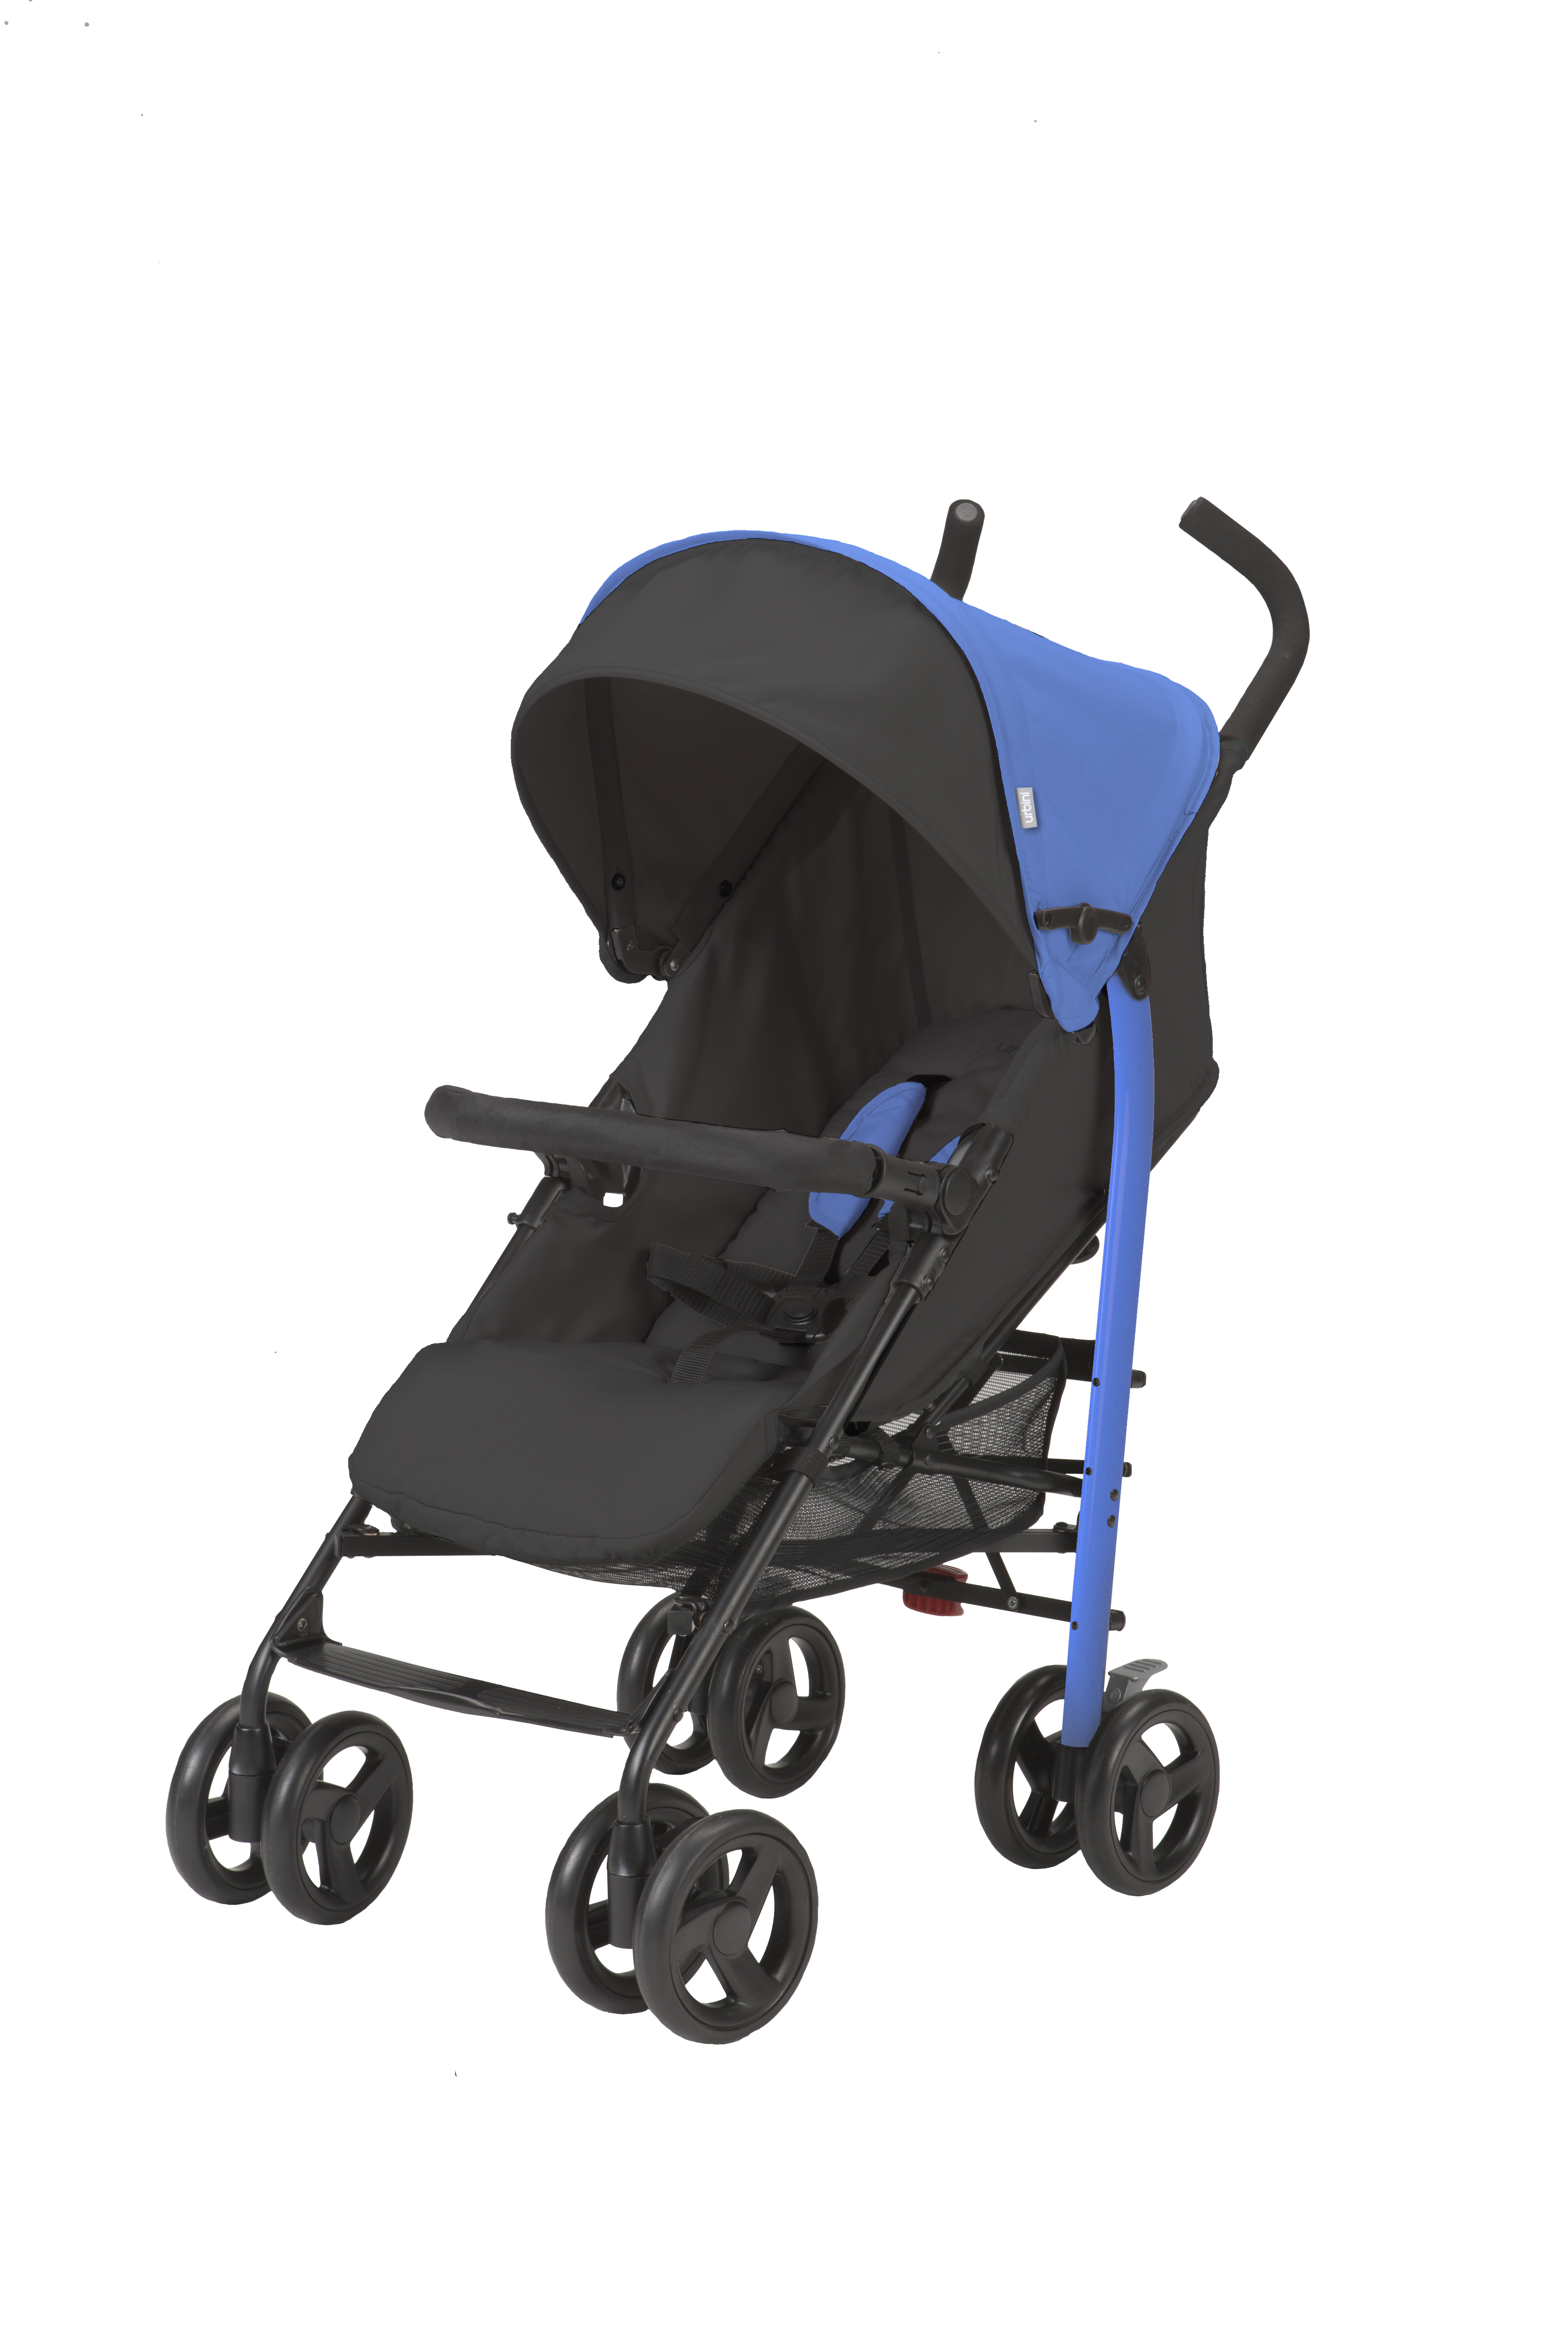 urbini infant stroller